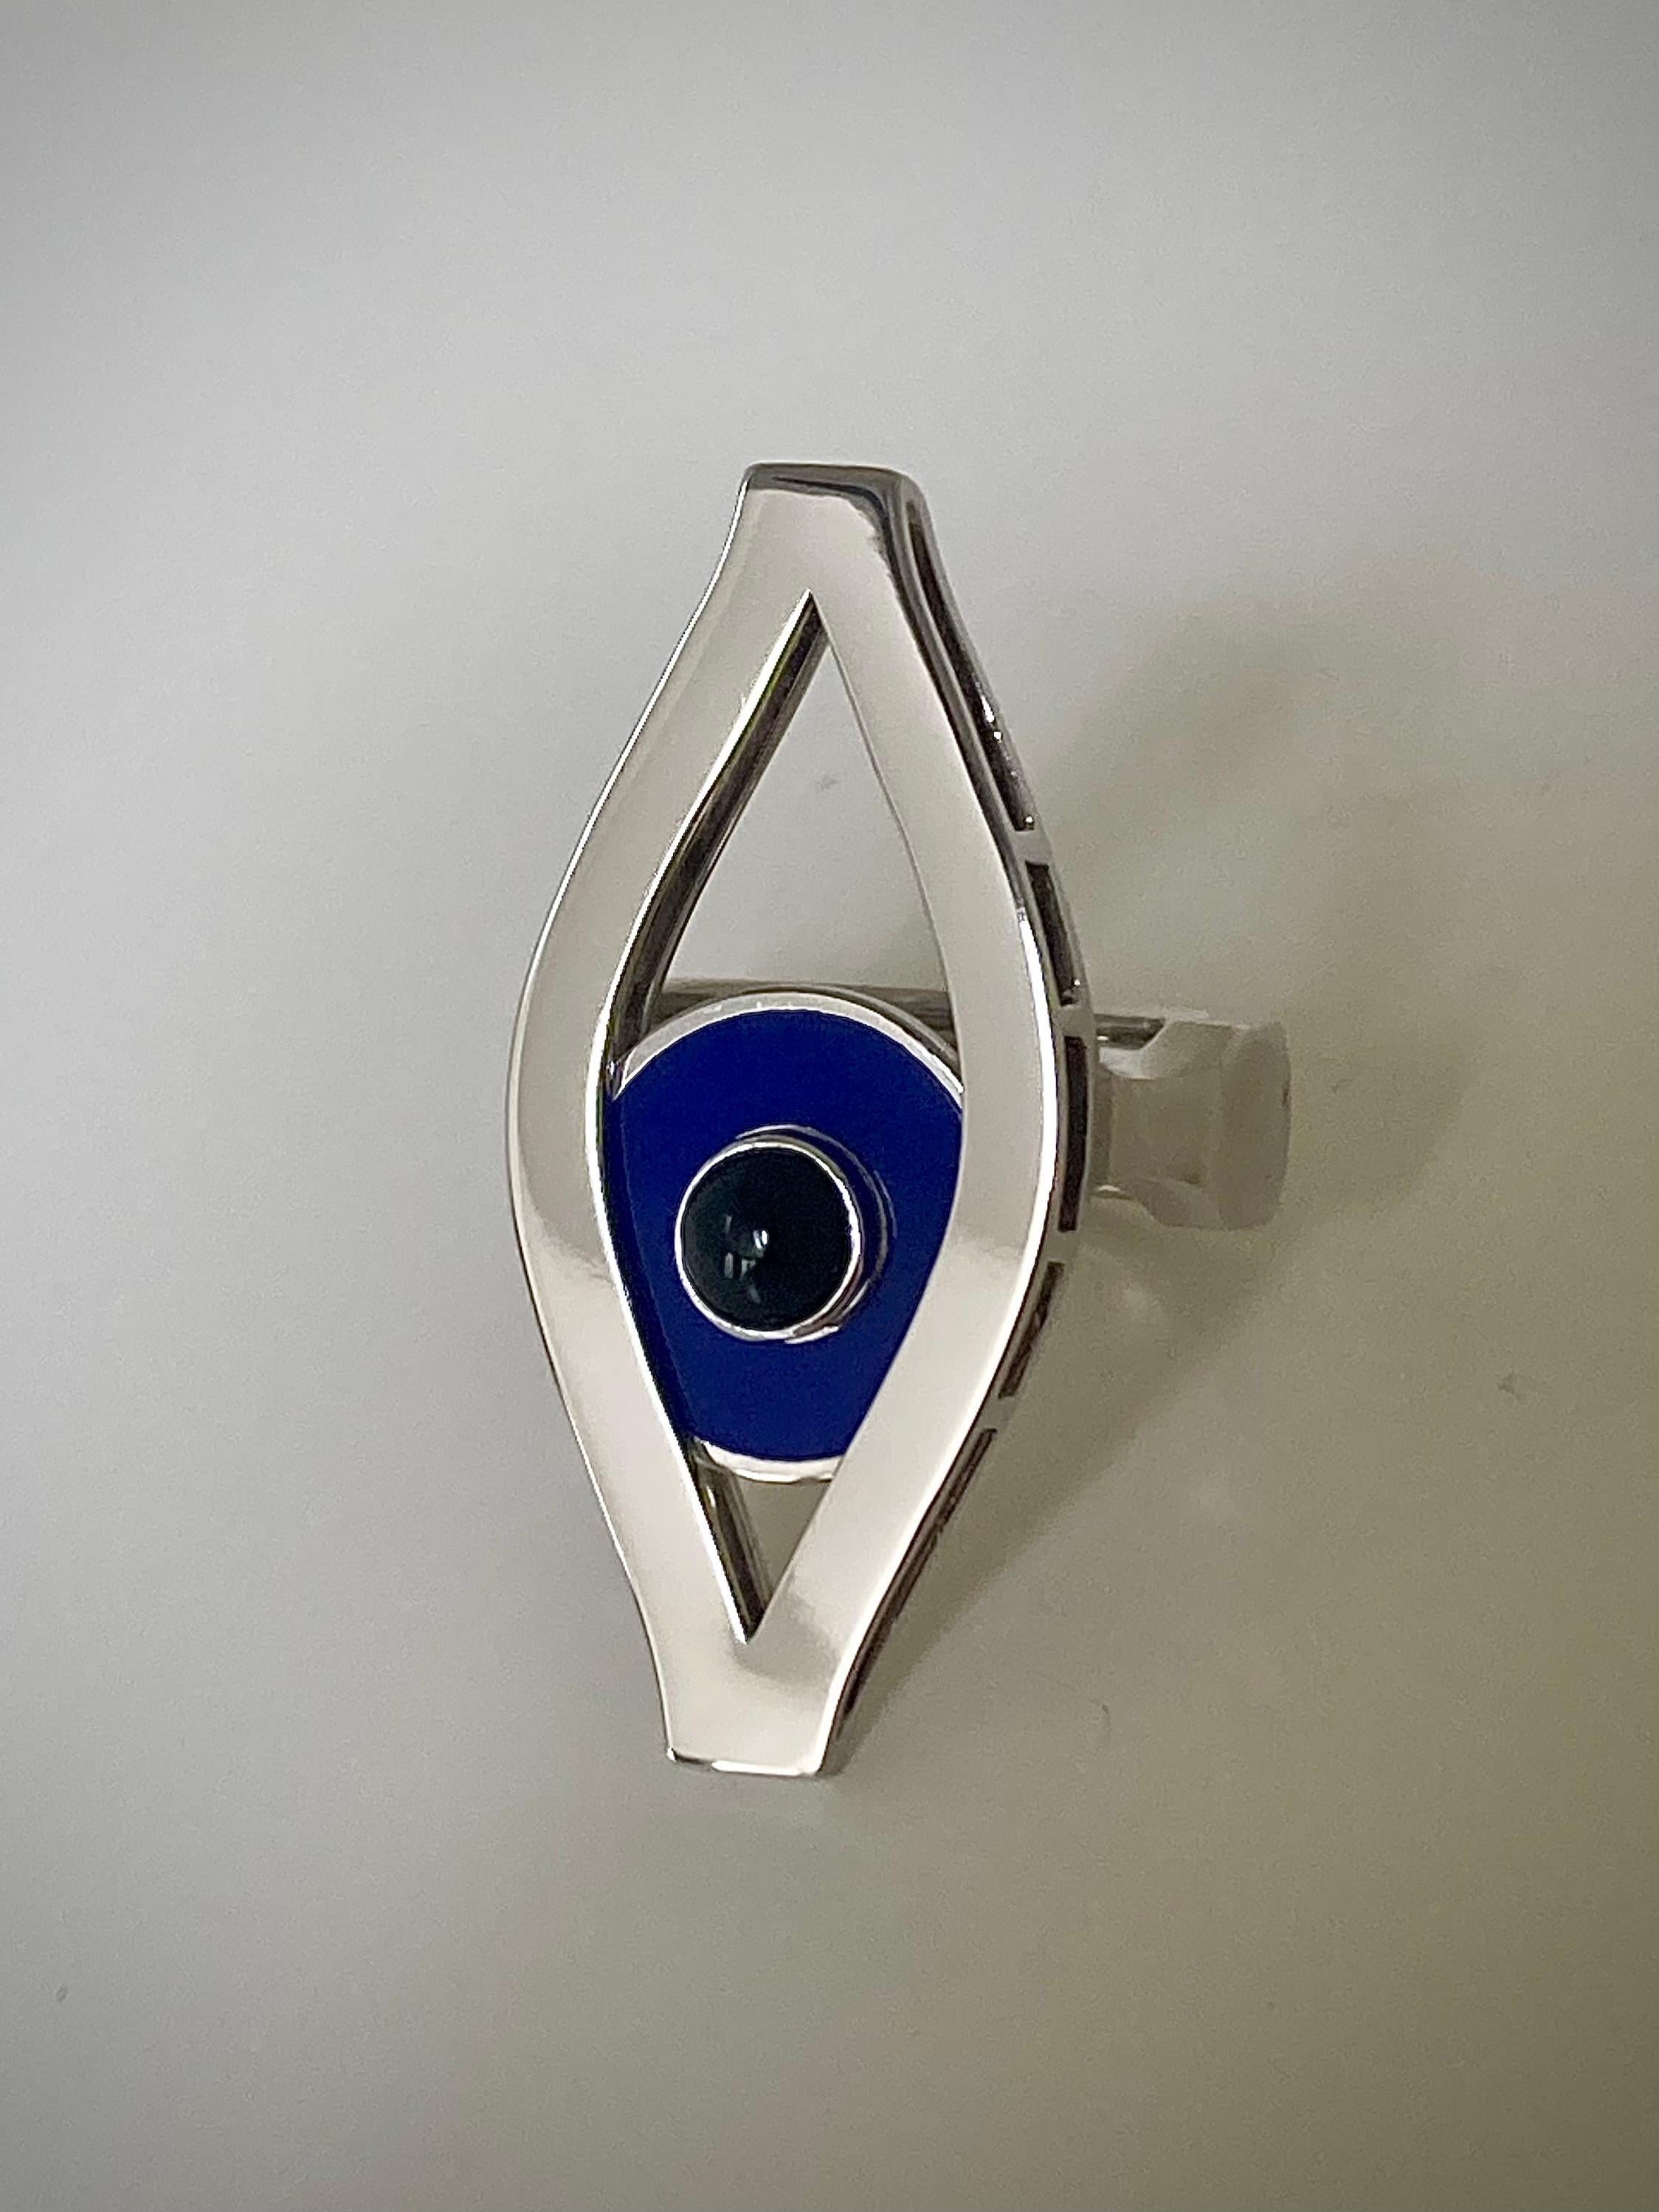 Bague cinétique Third Eye d'Ilona Orel en or blanc 18k avec une pupille mobile en laque bleue, qui glisse avec le mouvement de la main.
 Les bijoux cinétiques ne se limitent pas à la beauté du mouvement, ils ajoutent également un élément ludique aux